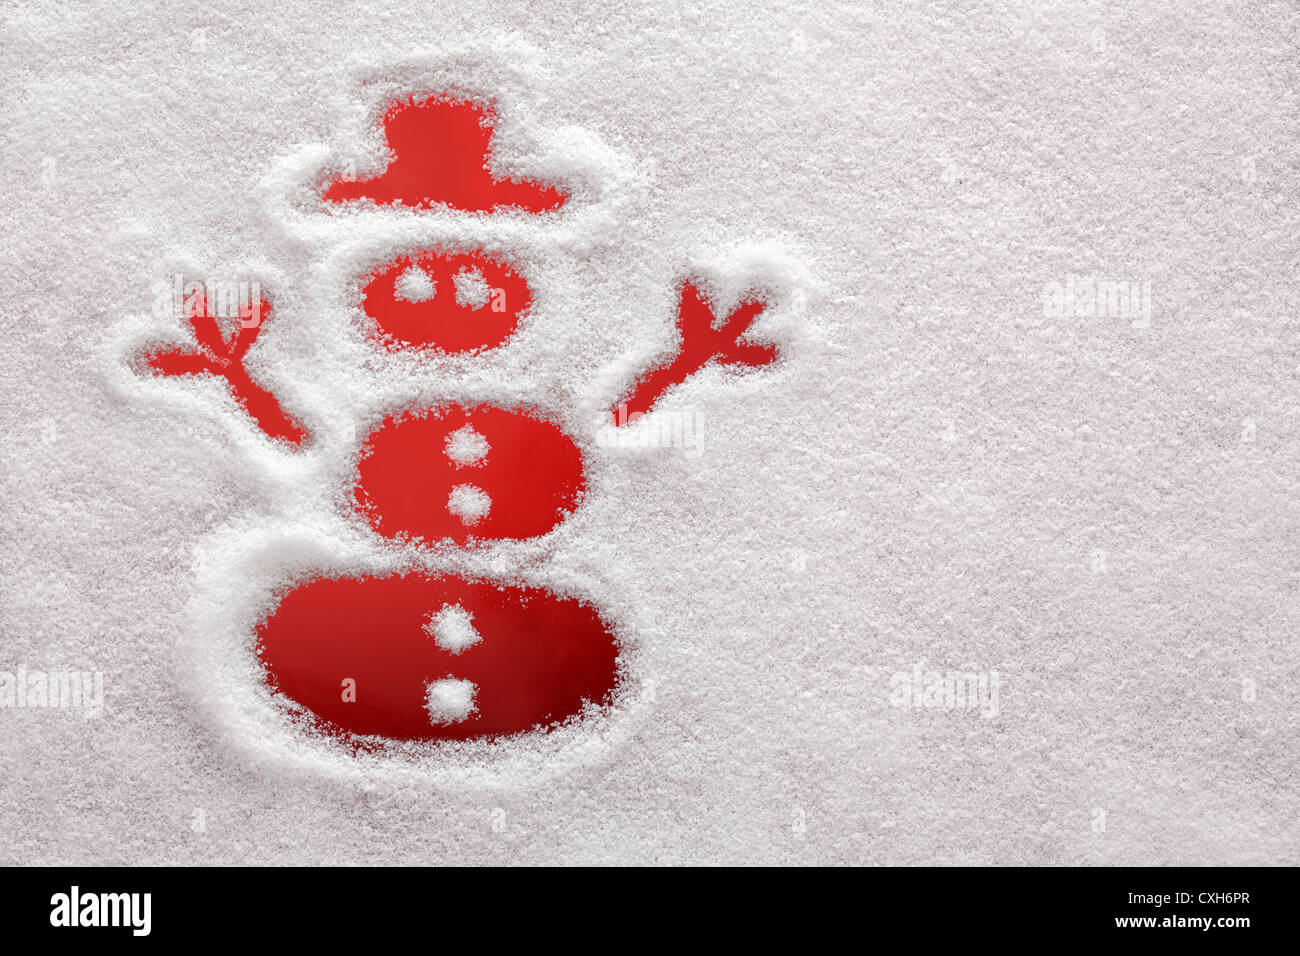 Le Snowman dessiné dans la neige Banque D'Images